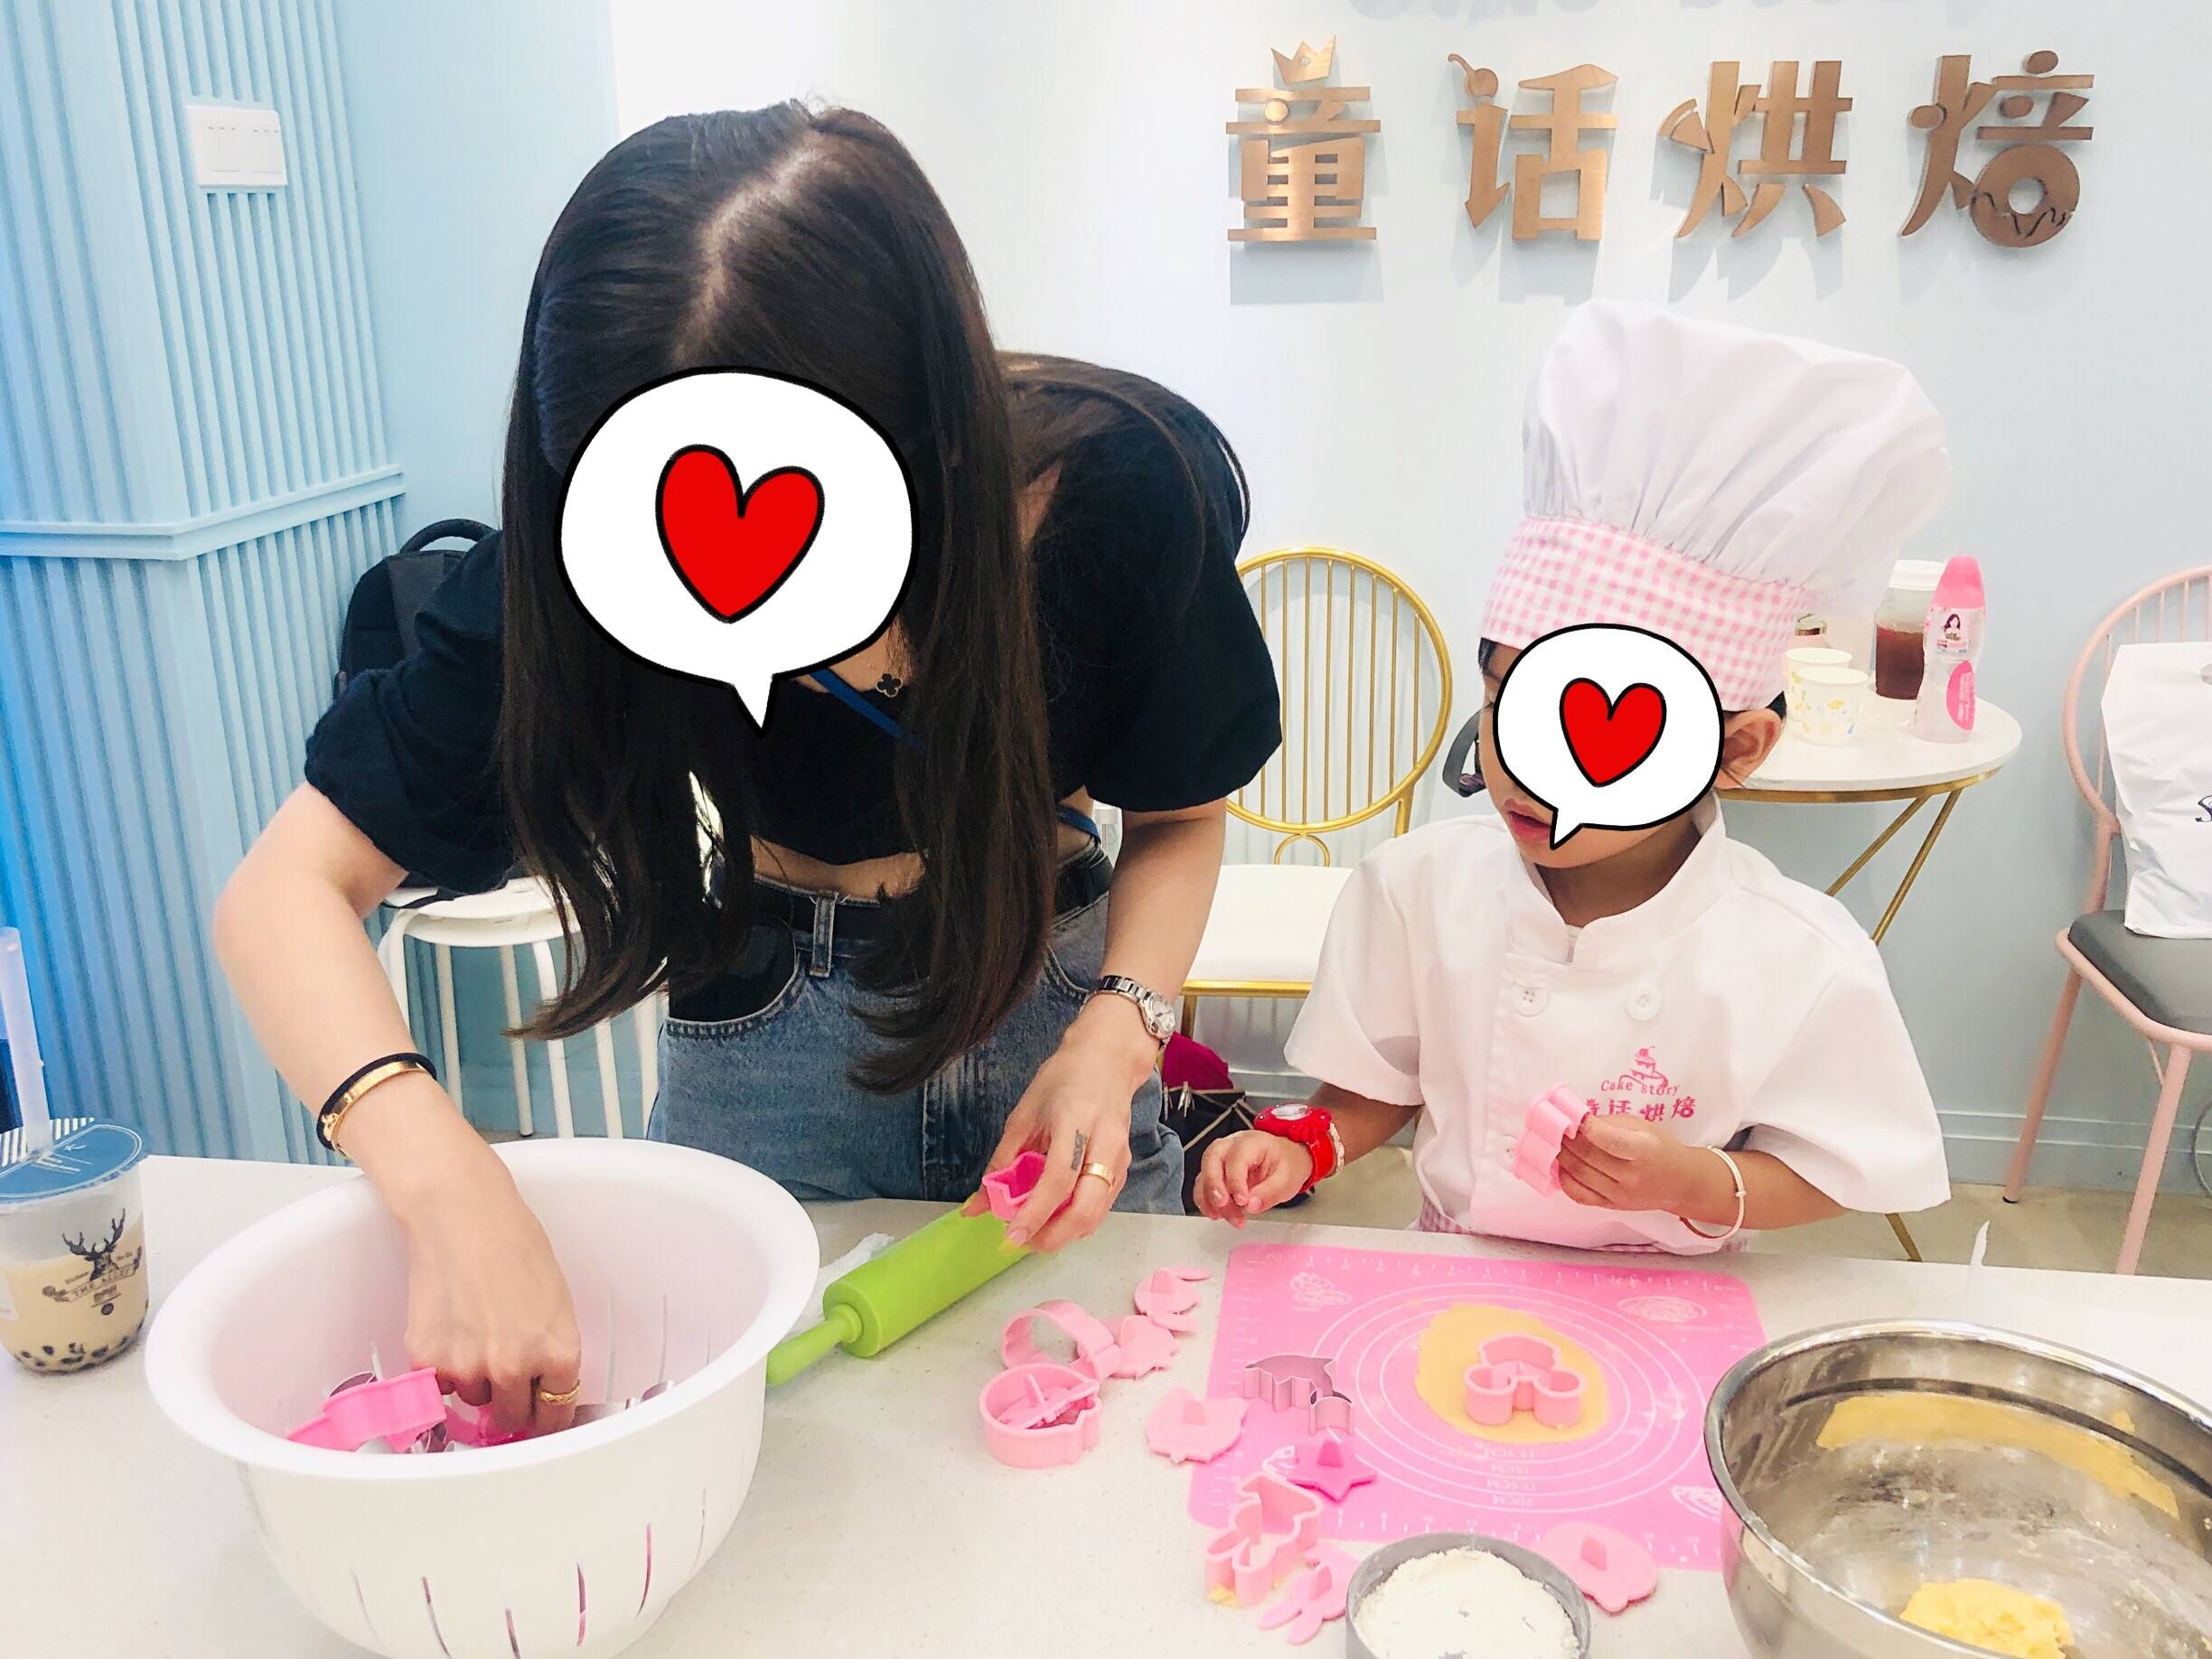 【广州】地铁直达，59元限购广州FUN乐园亲子饼干DIY门票，不加收，亲手制作专业指导，让孩子变身甜点师！